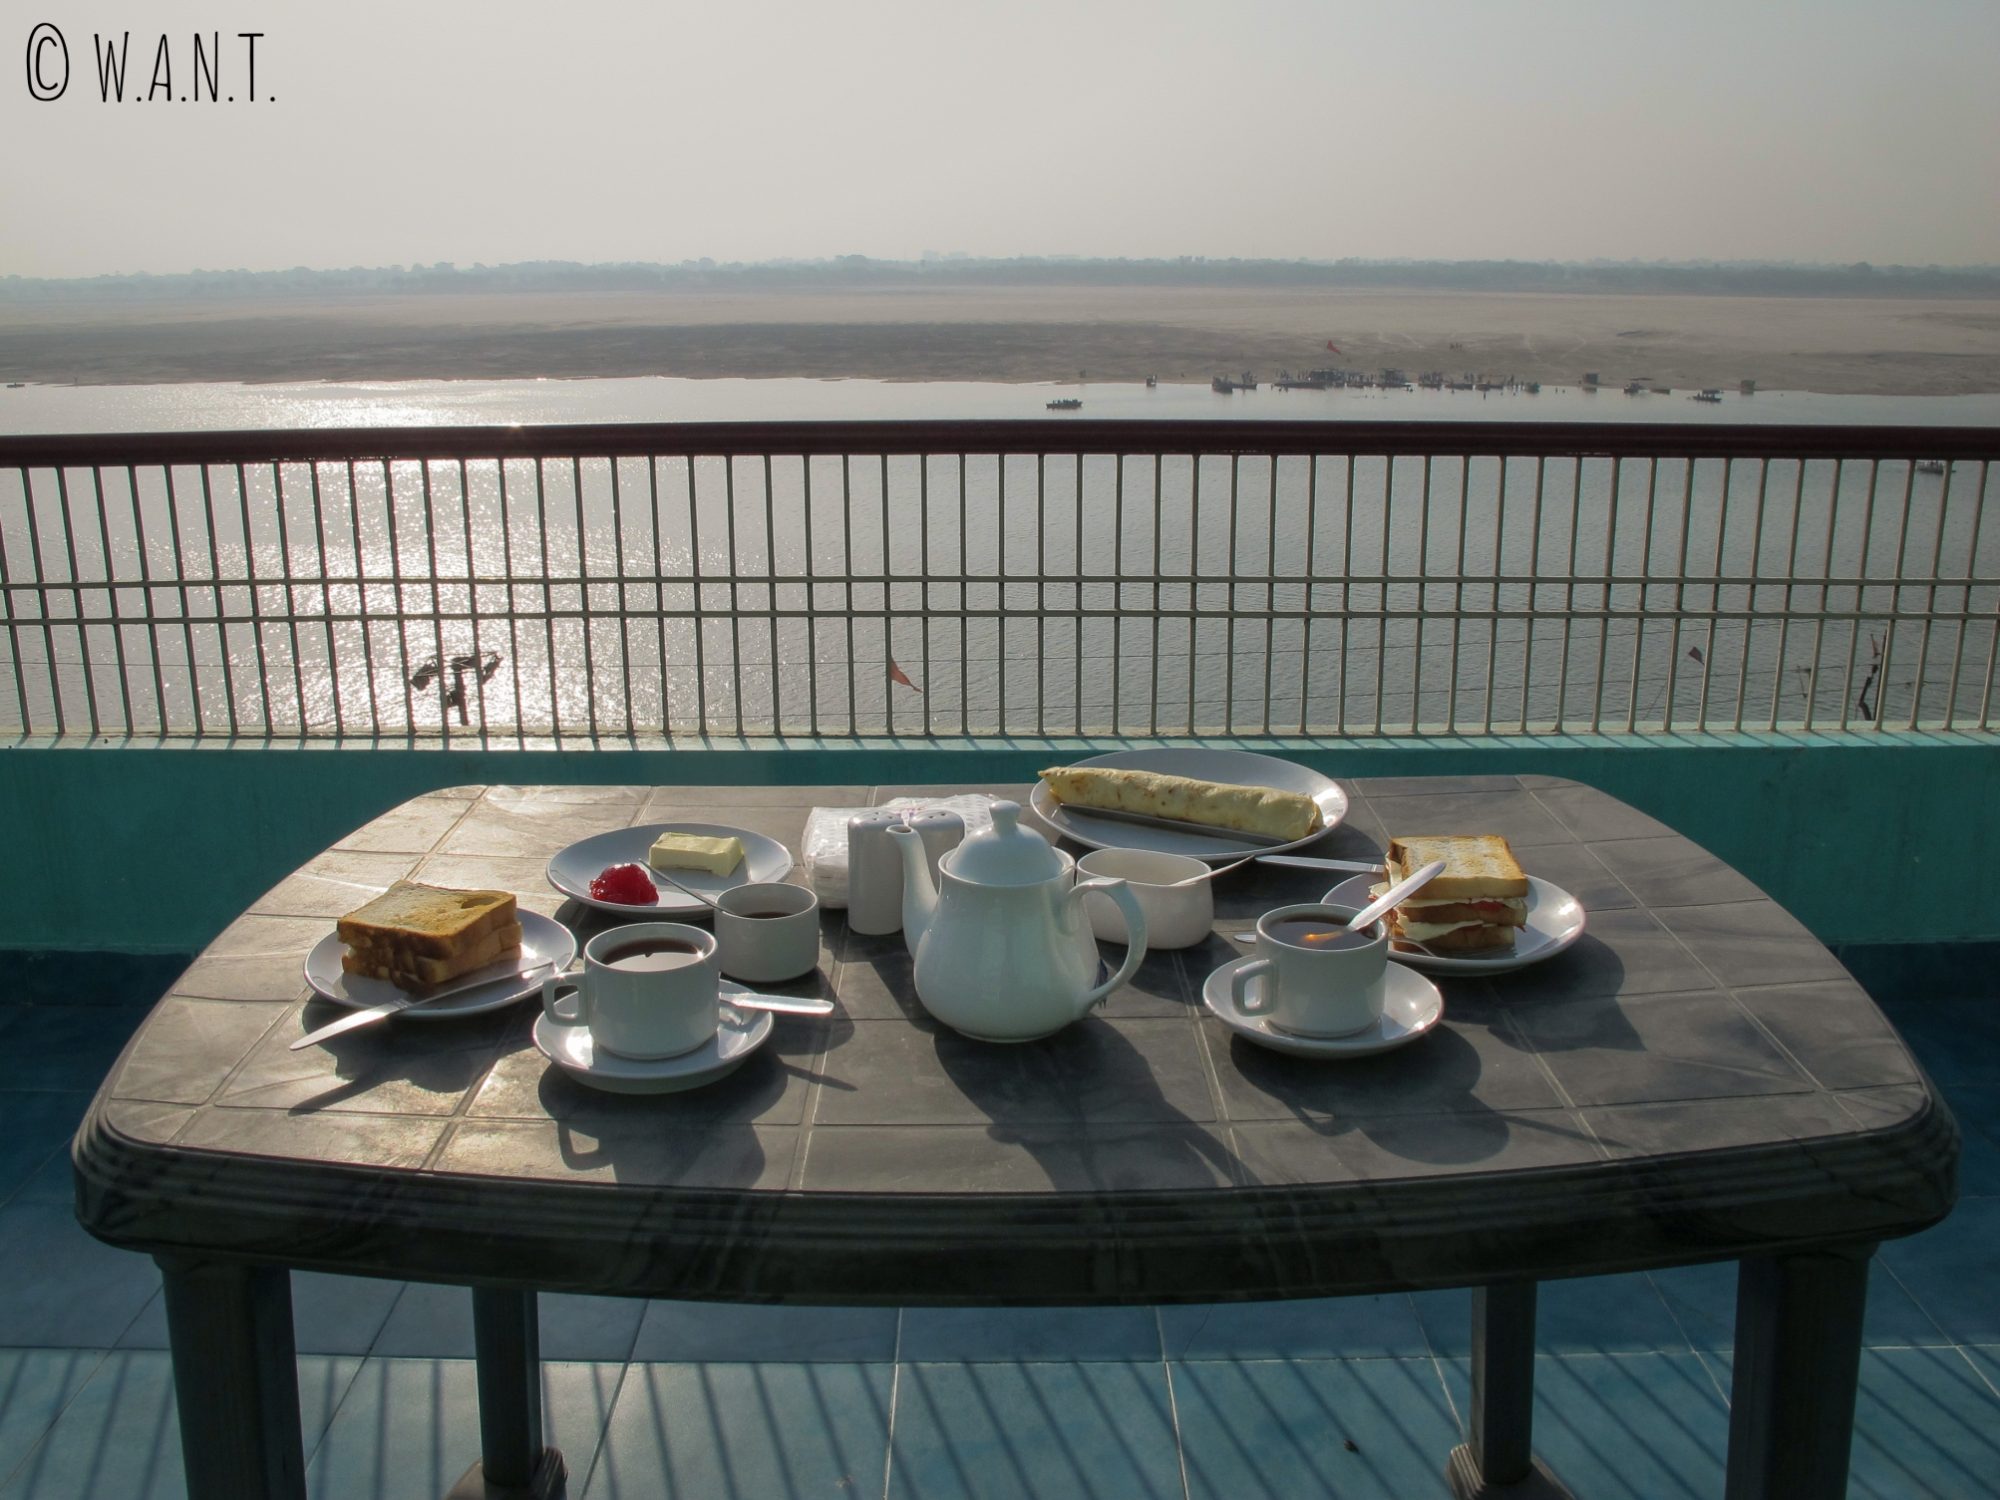 Rien de tel pour commencer une bonne journée à Varanasi qu'un petit-déjeuner avec vue sur le Gange